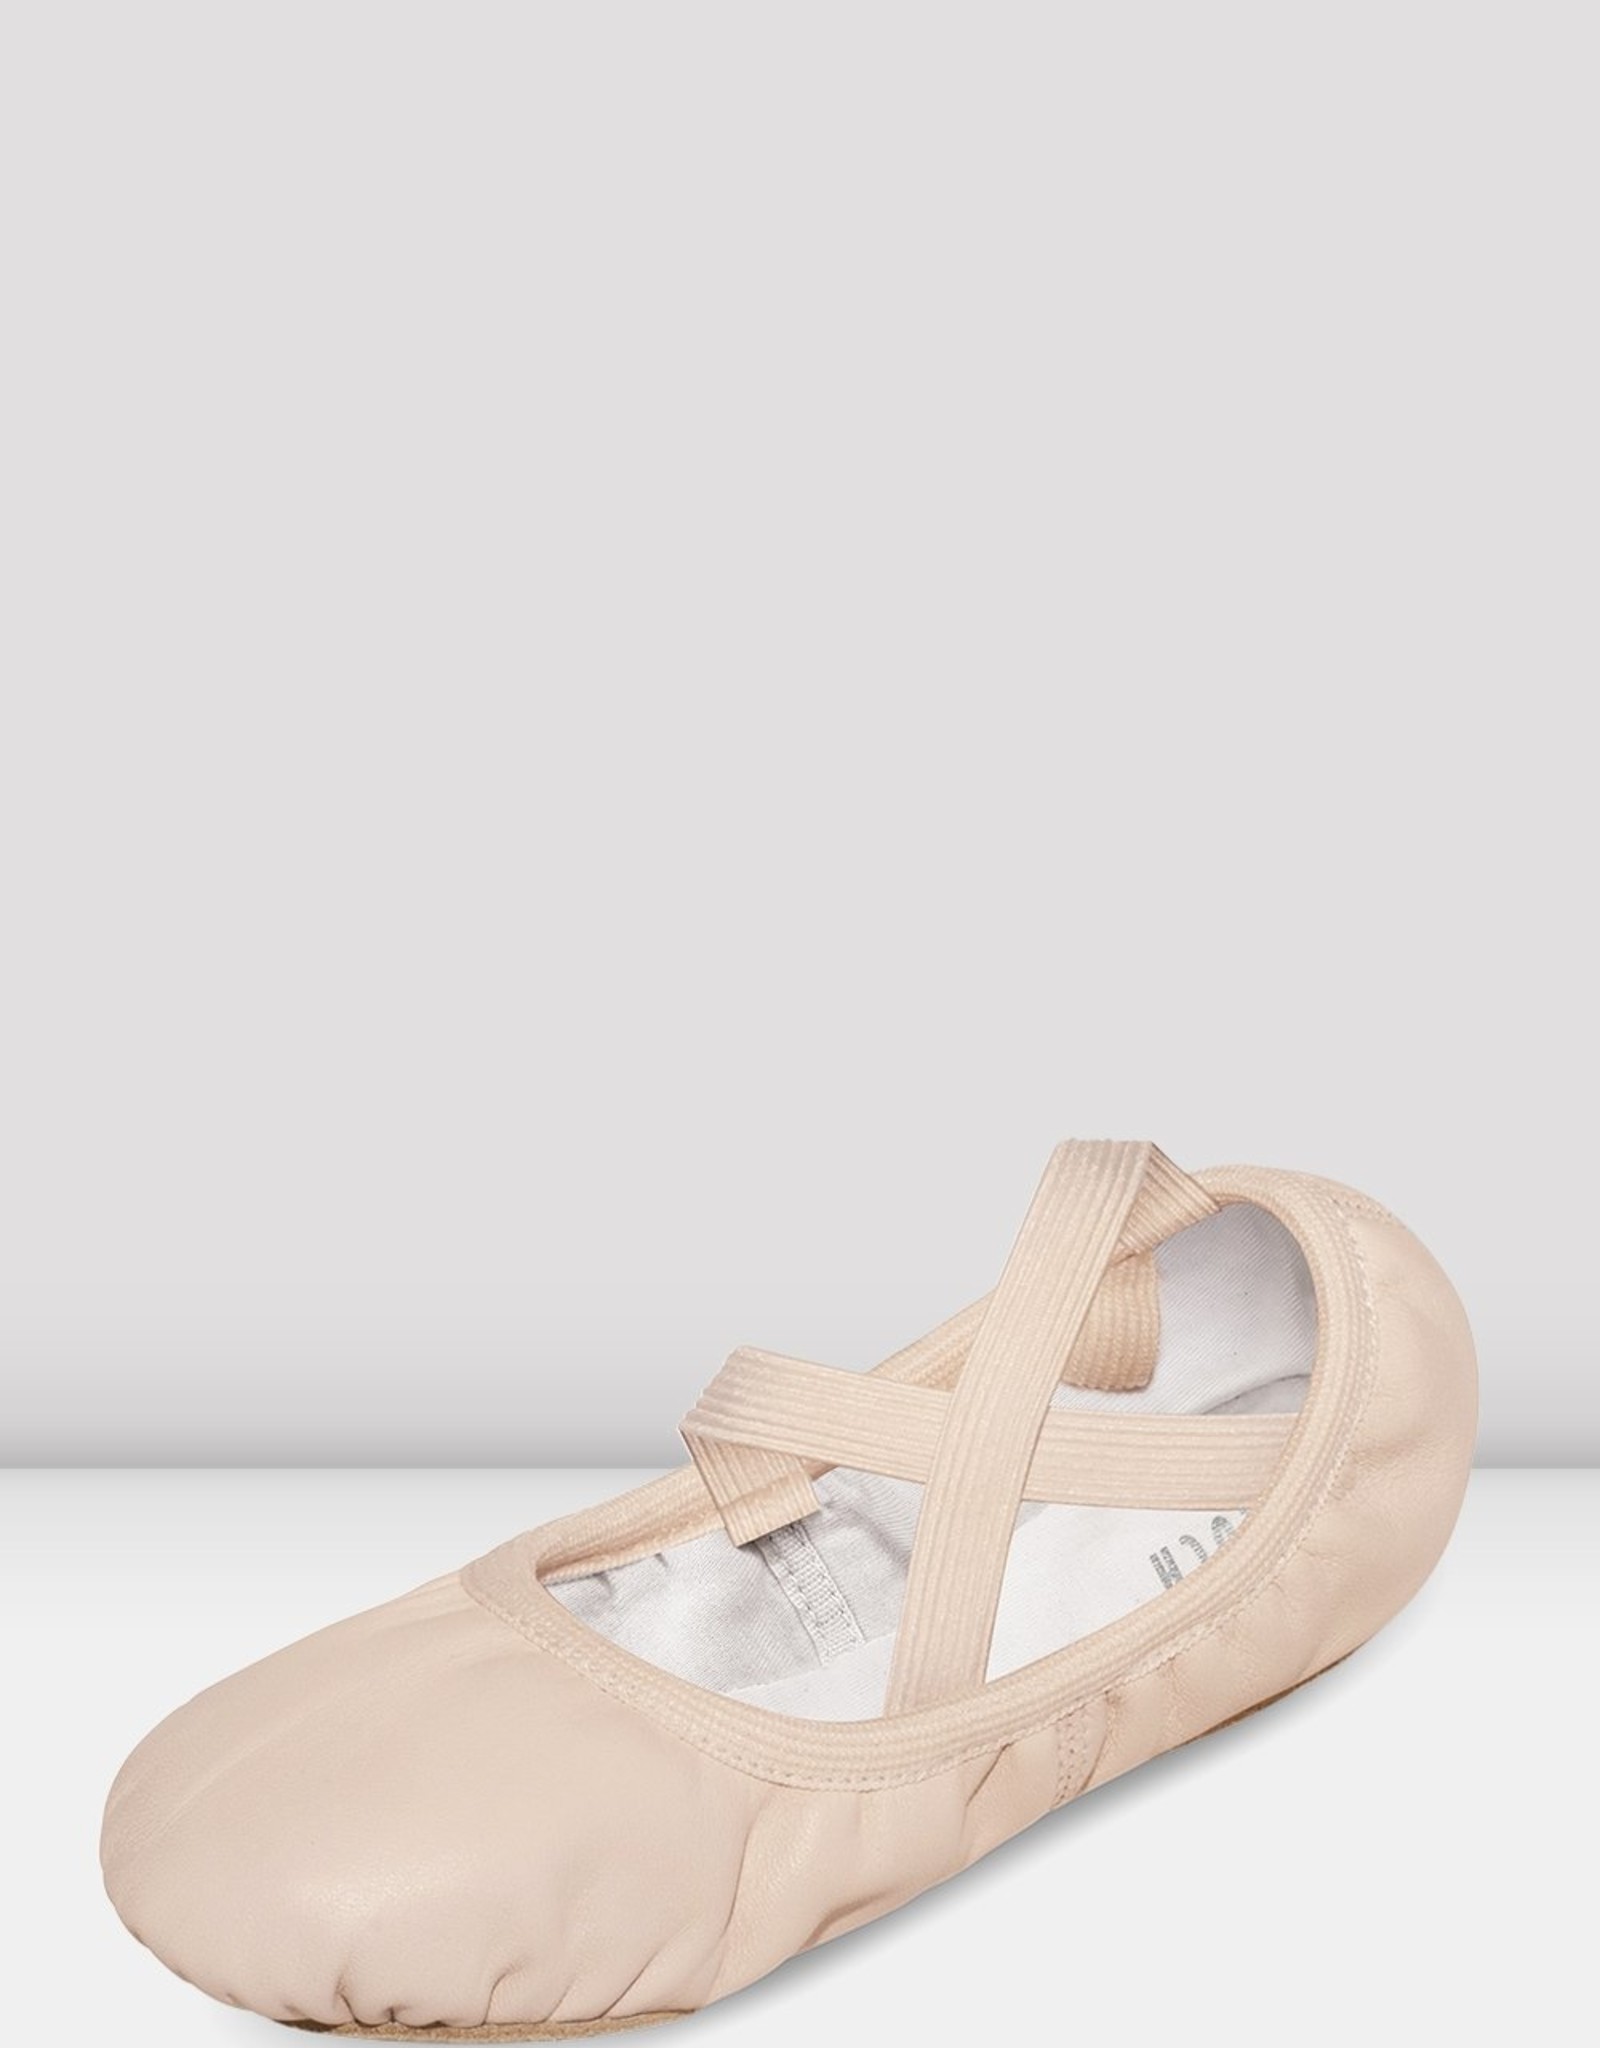 Bloch Ladies' S0246L Odette Ballet Shoes